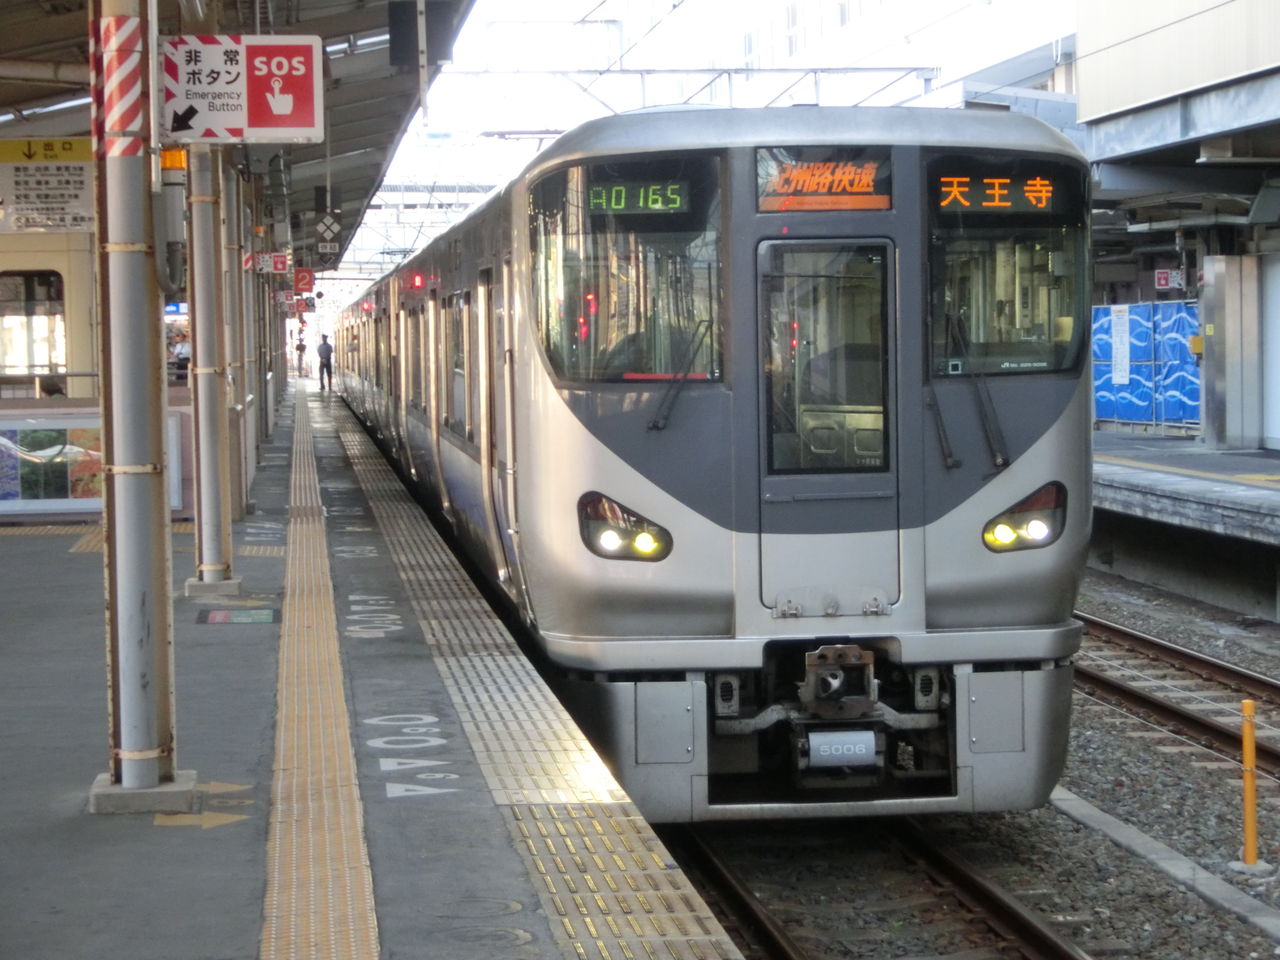 阪和線 折り返し設備の新設 拡充で運転見合わせ区間を短縮へ 関西のjrへようこそ